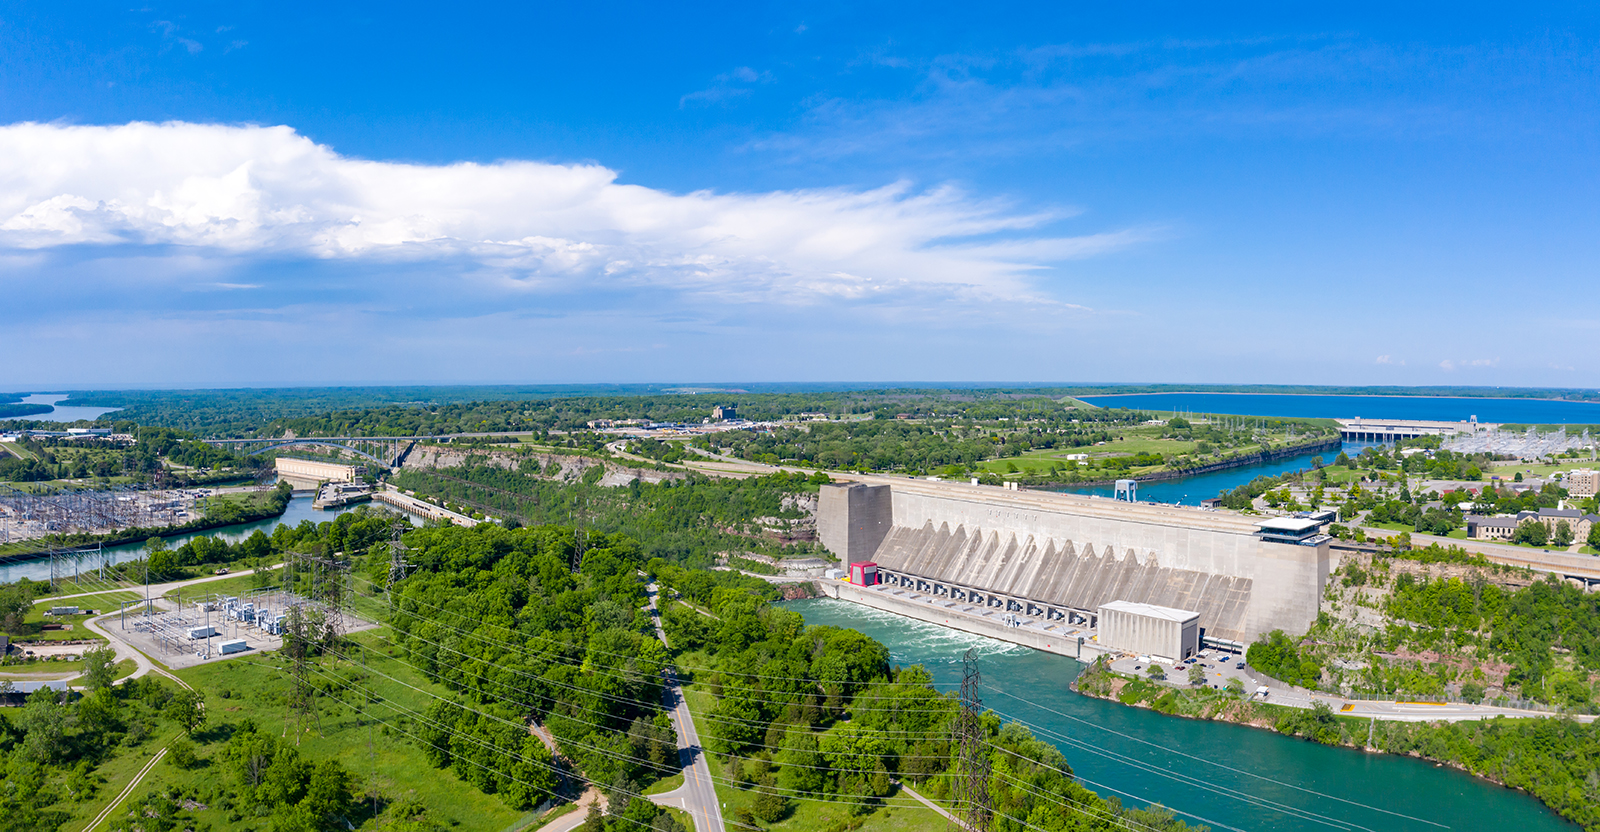 Centrale hydroélectrique - Ontario Power Generation